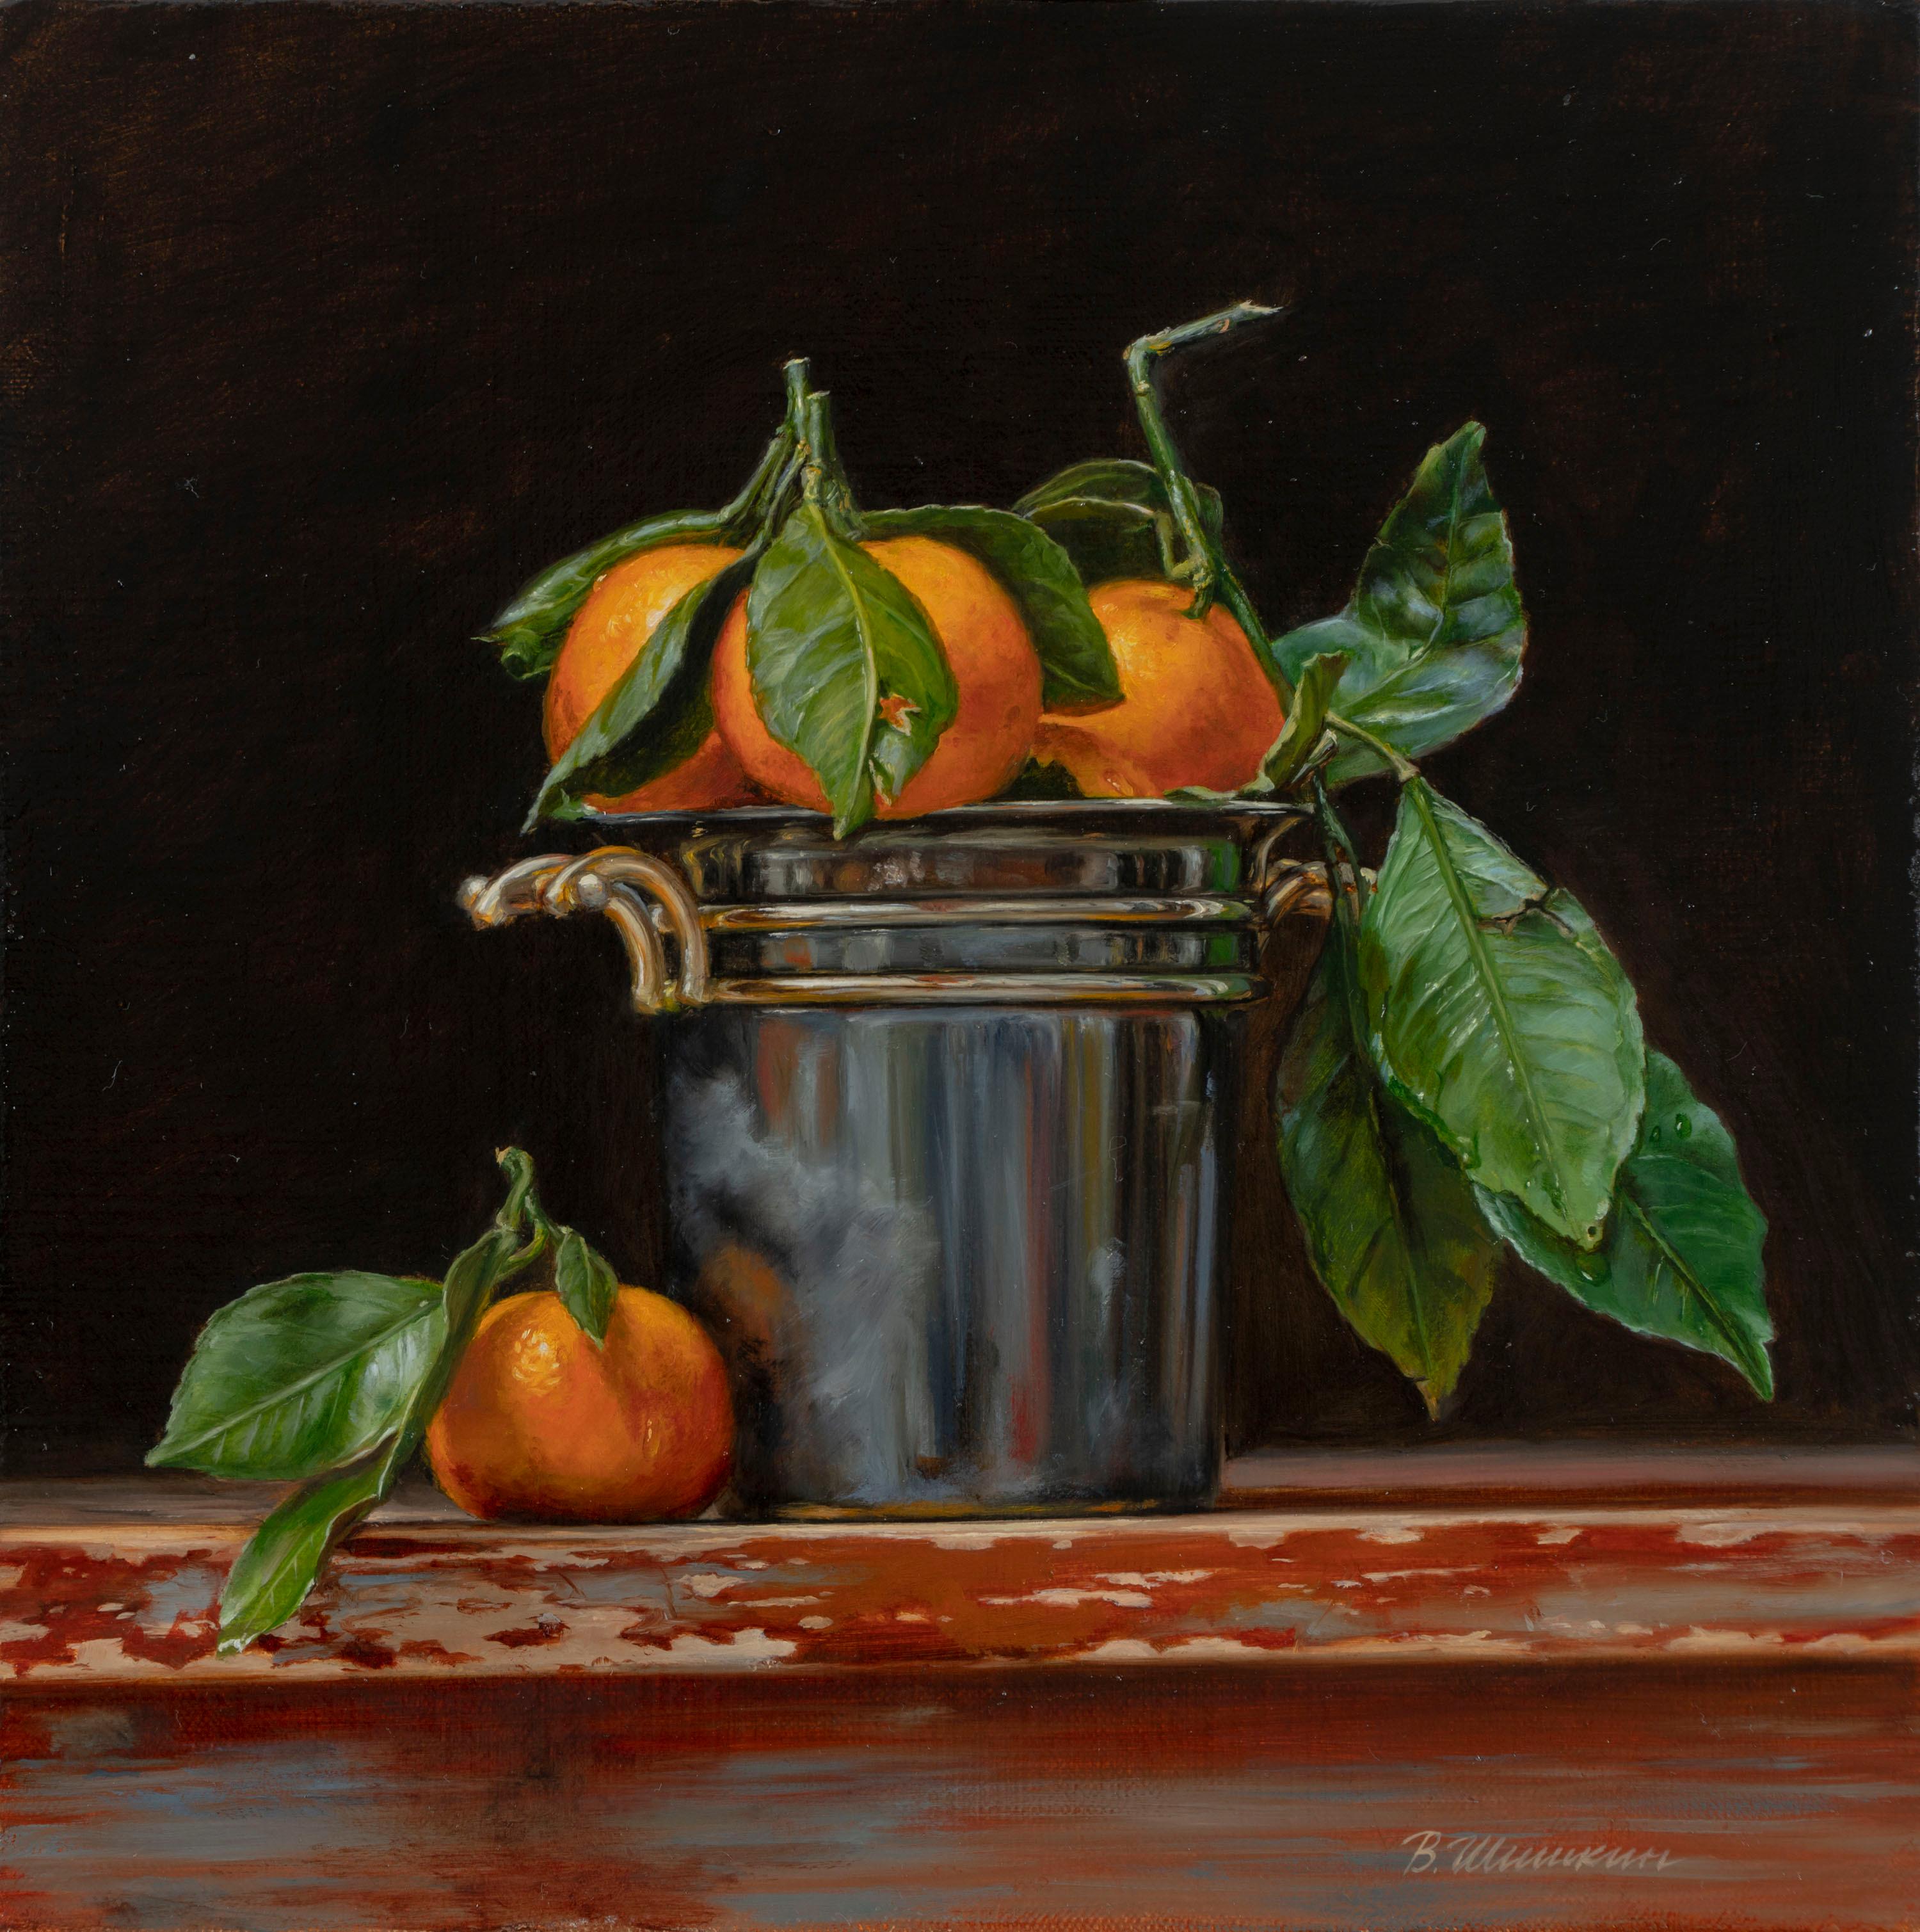 桶中的橘子. Original modern art painting